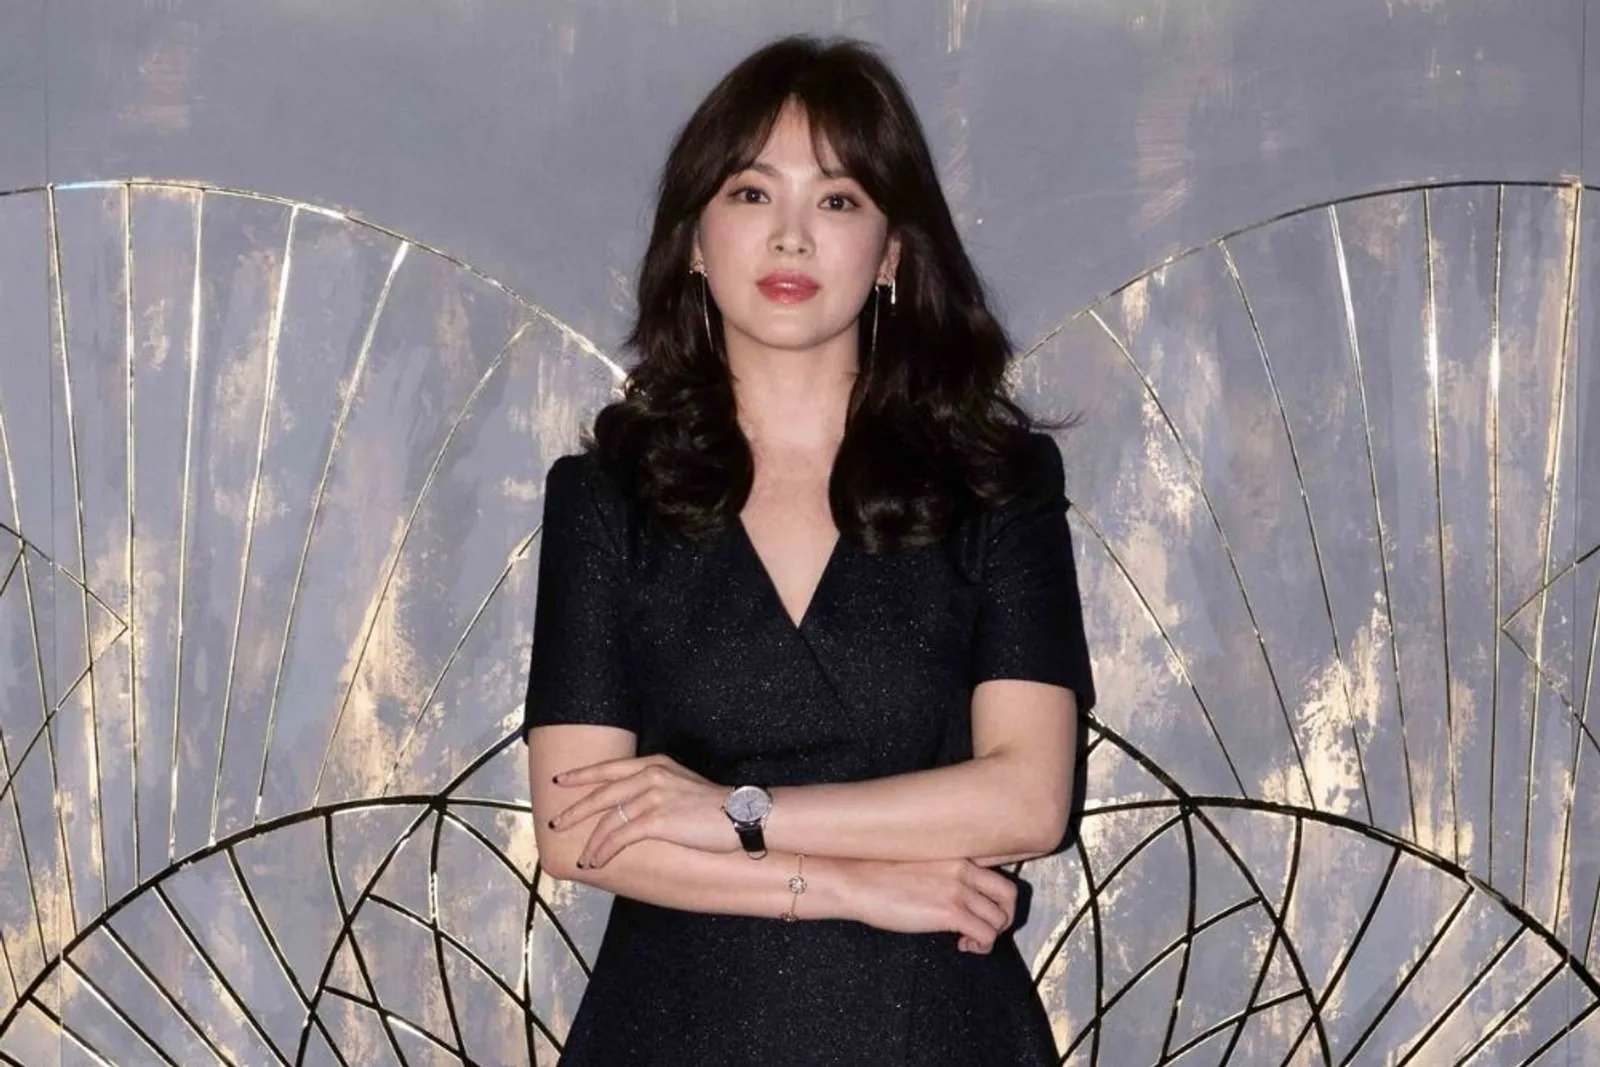 Kulit Makin Kencang di Usia 39 Tahun, Intip Transformasi Song Hye Kyo 